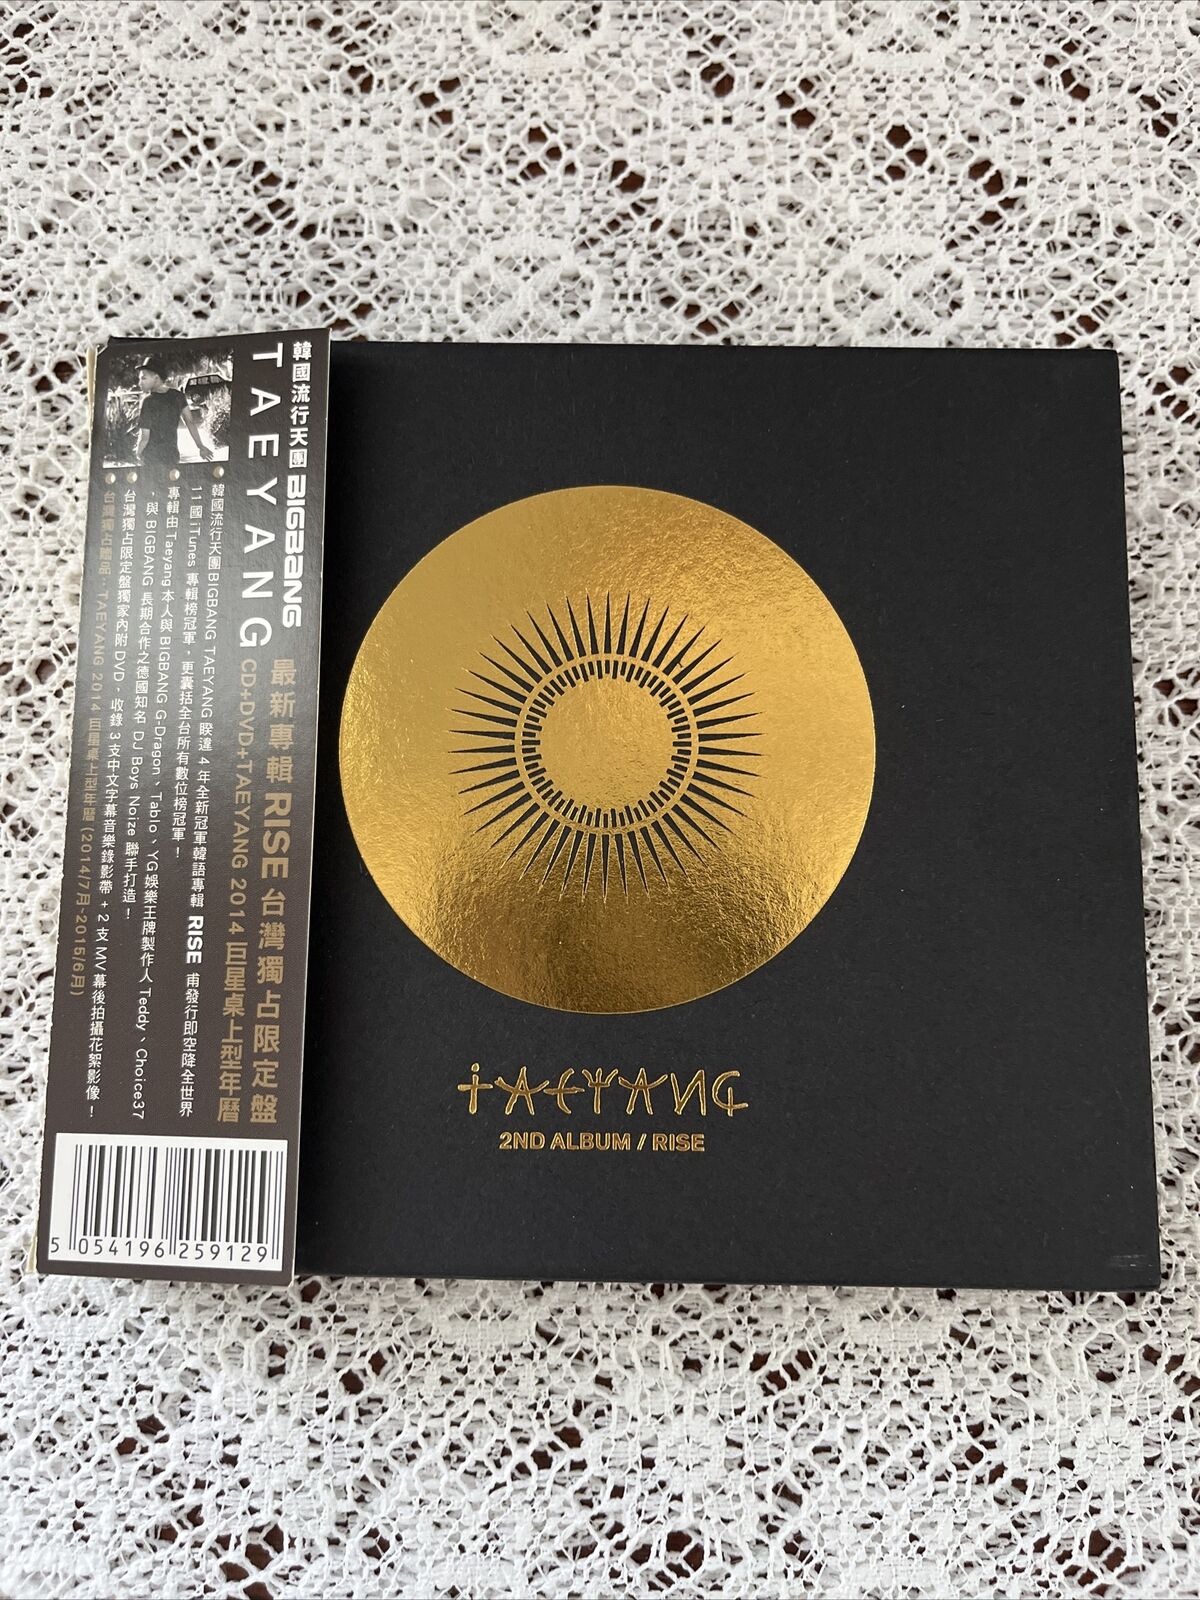 Taeyang - 2nd Album Rise 2014 Taiwan Ltd CD+DVD (BIGBANG)